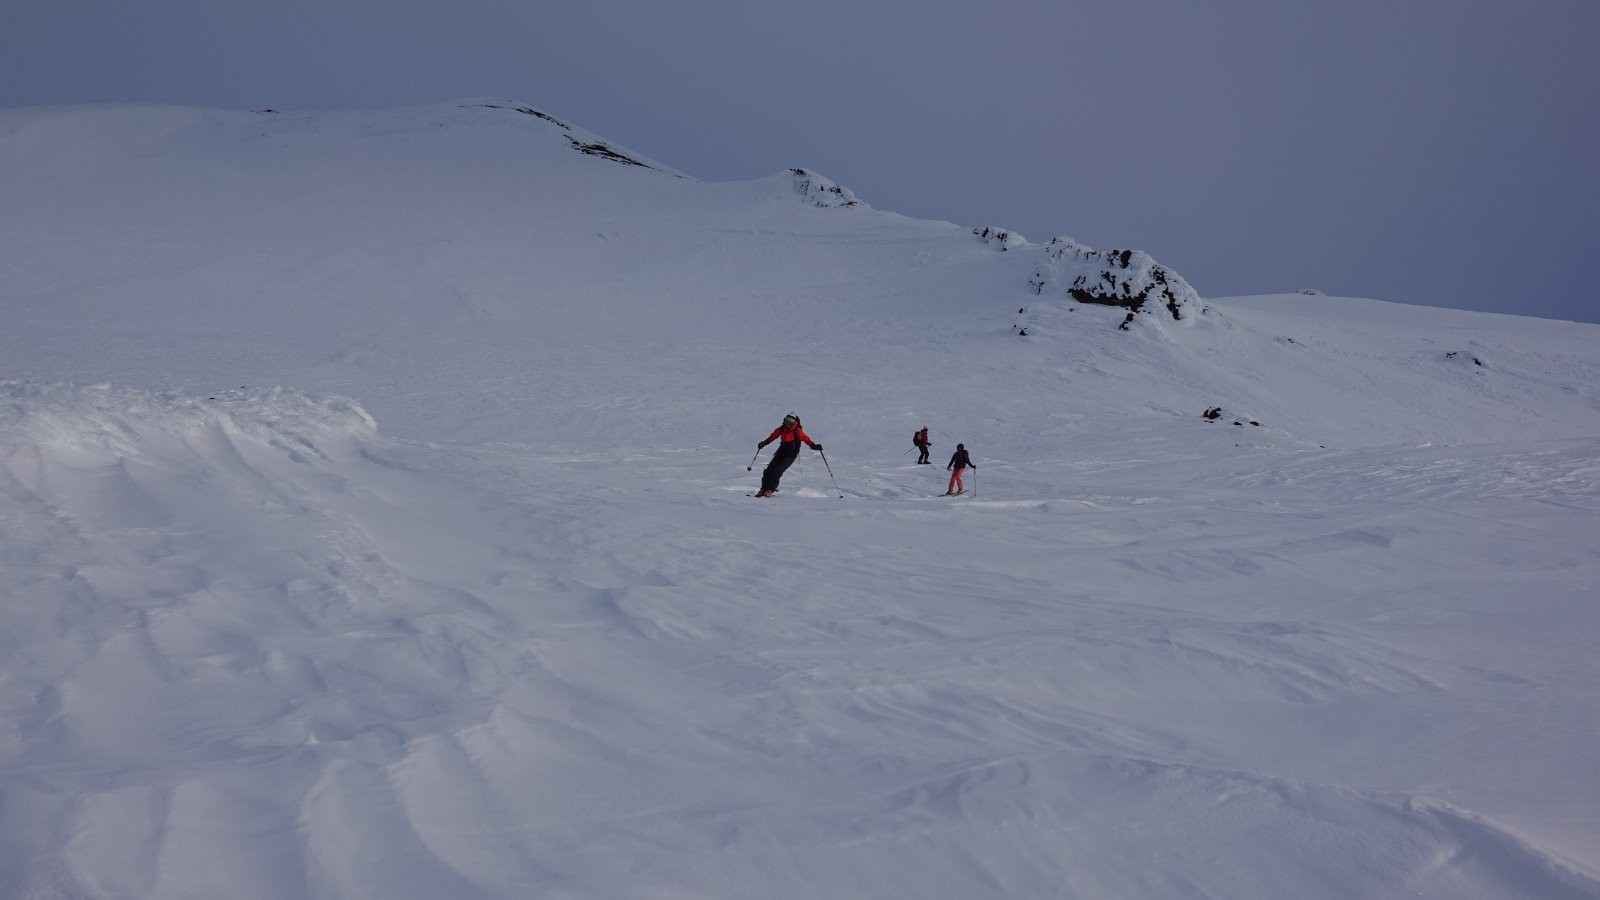 Début de descente à ski en neige dure lissée par le vent